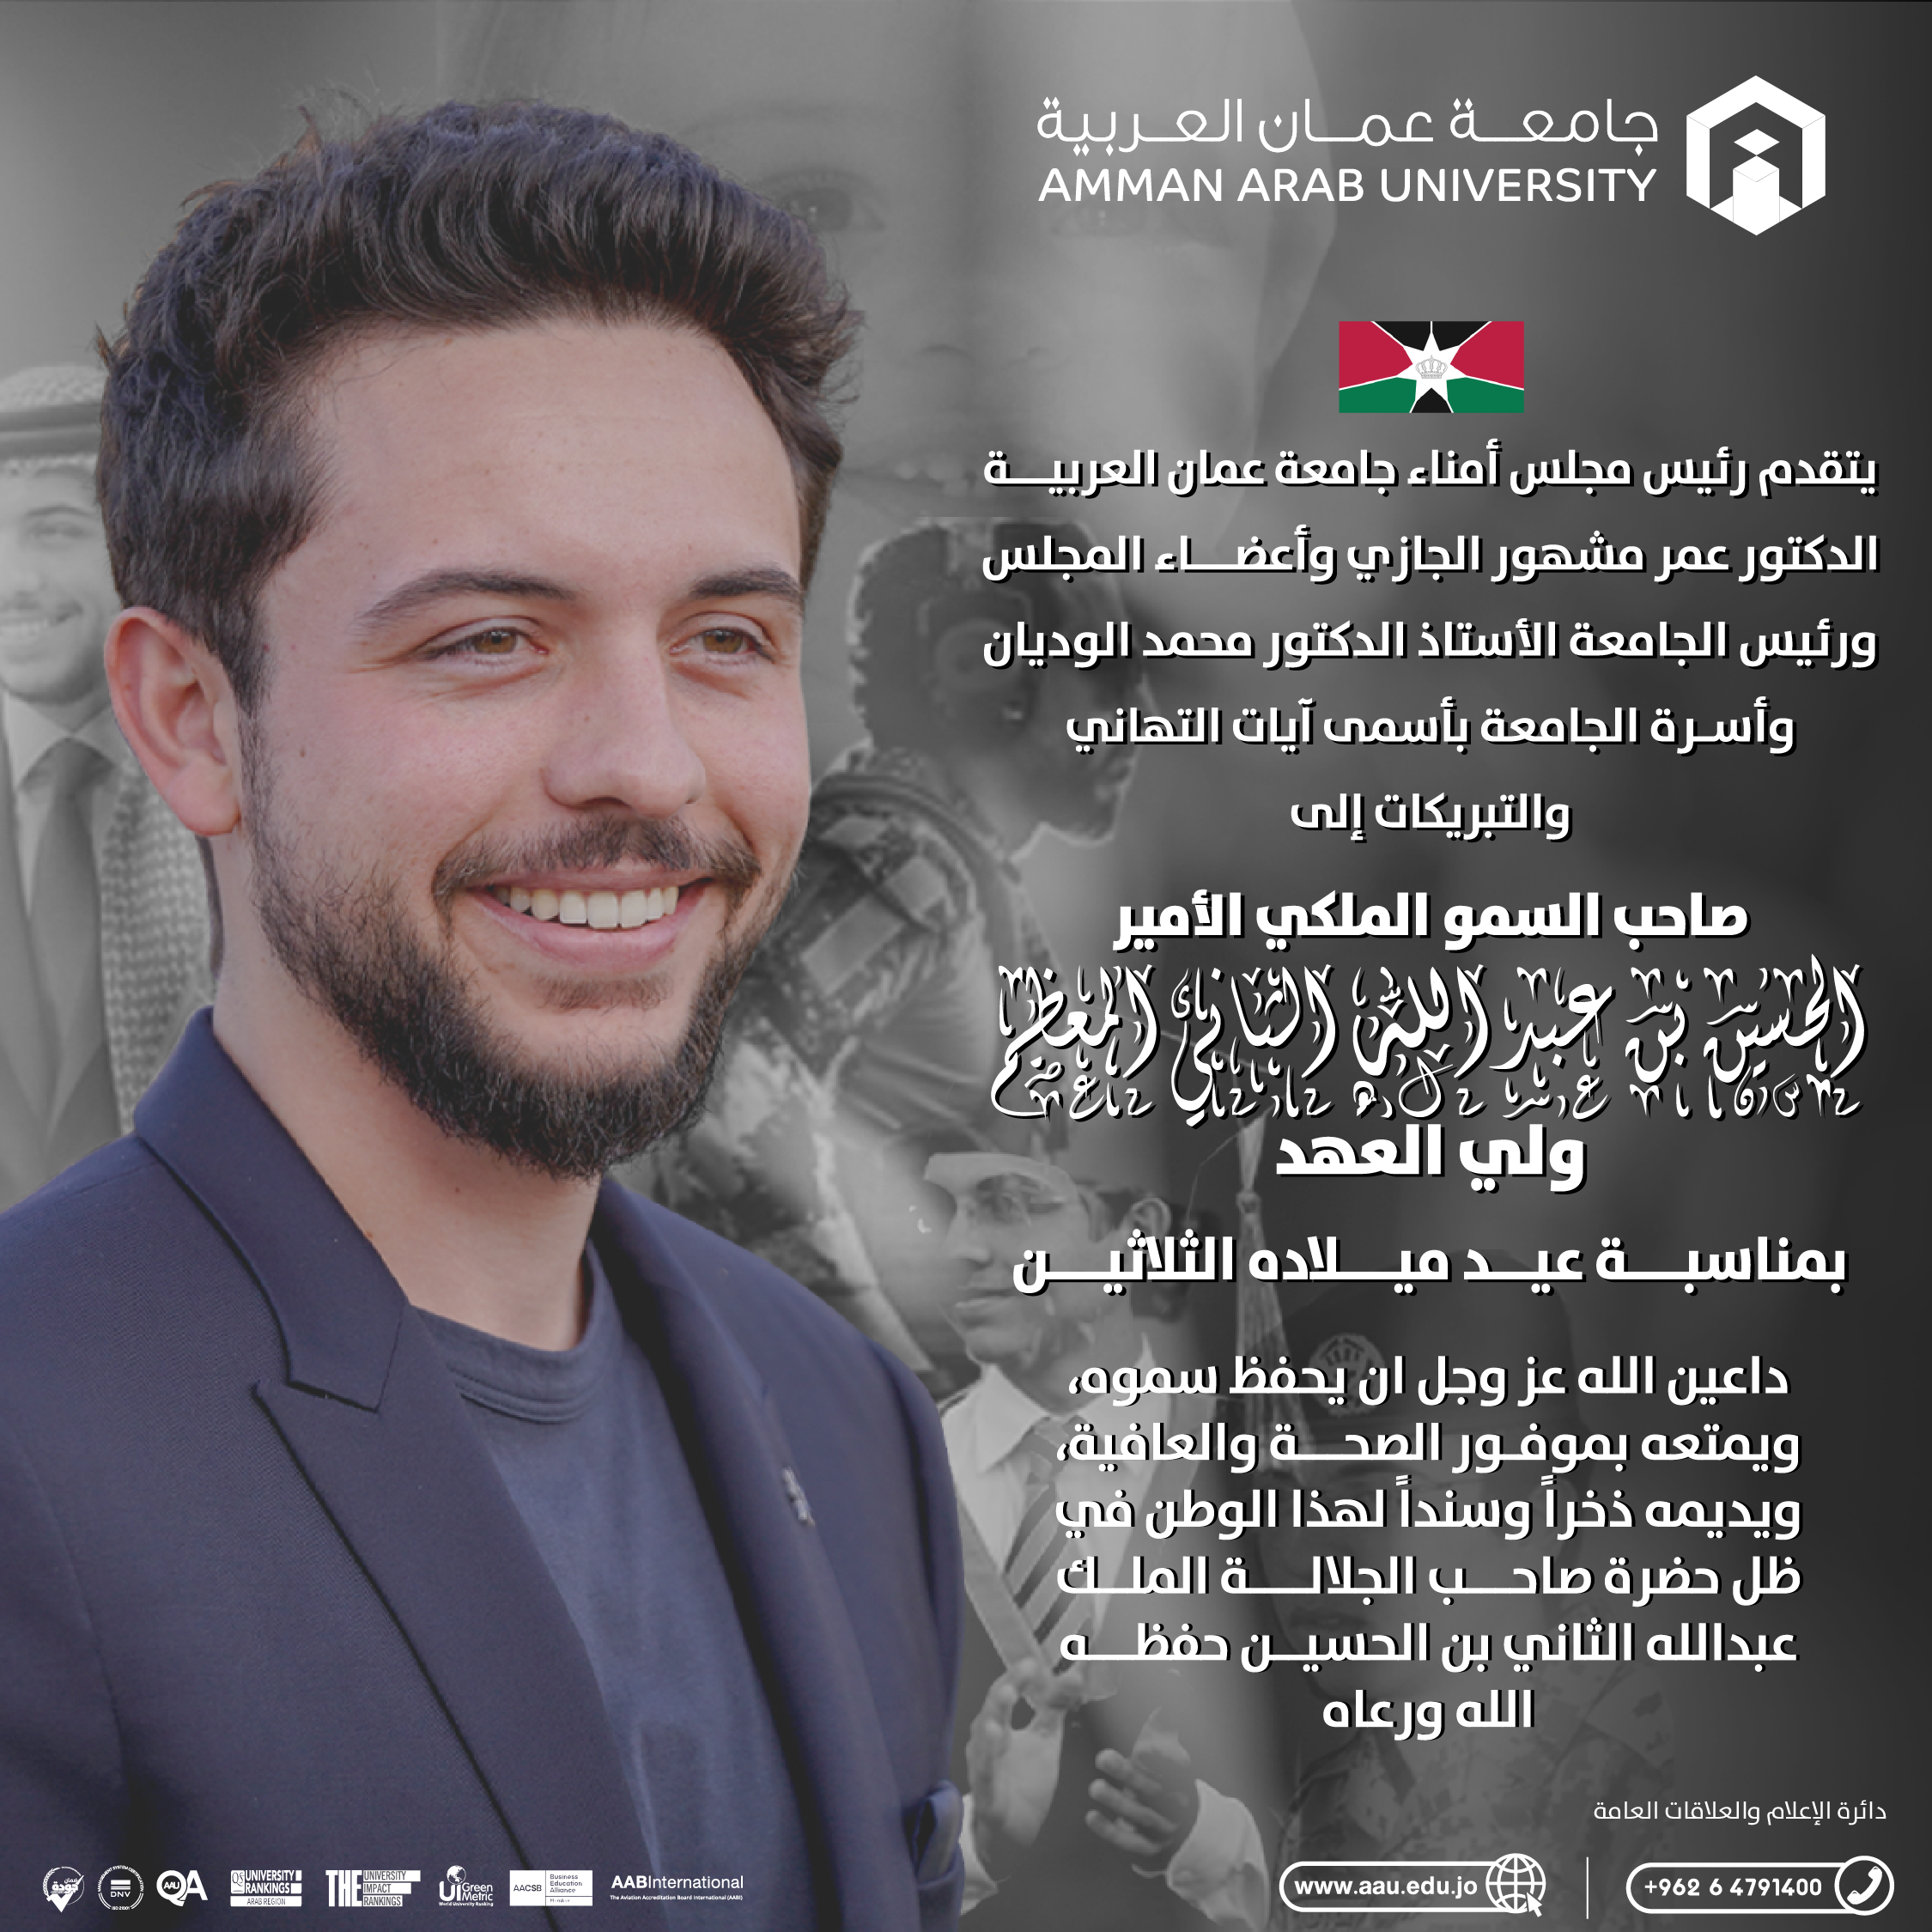 جامعة عمان العربية تهنئ ولي العهد بعيد ميلاده الميمون 